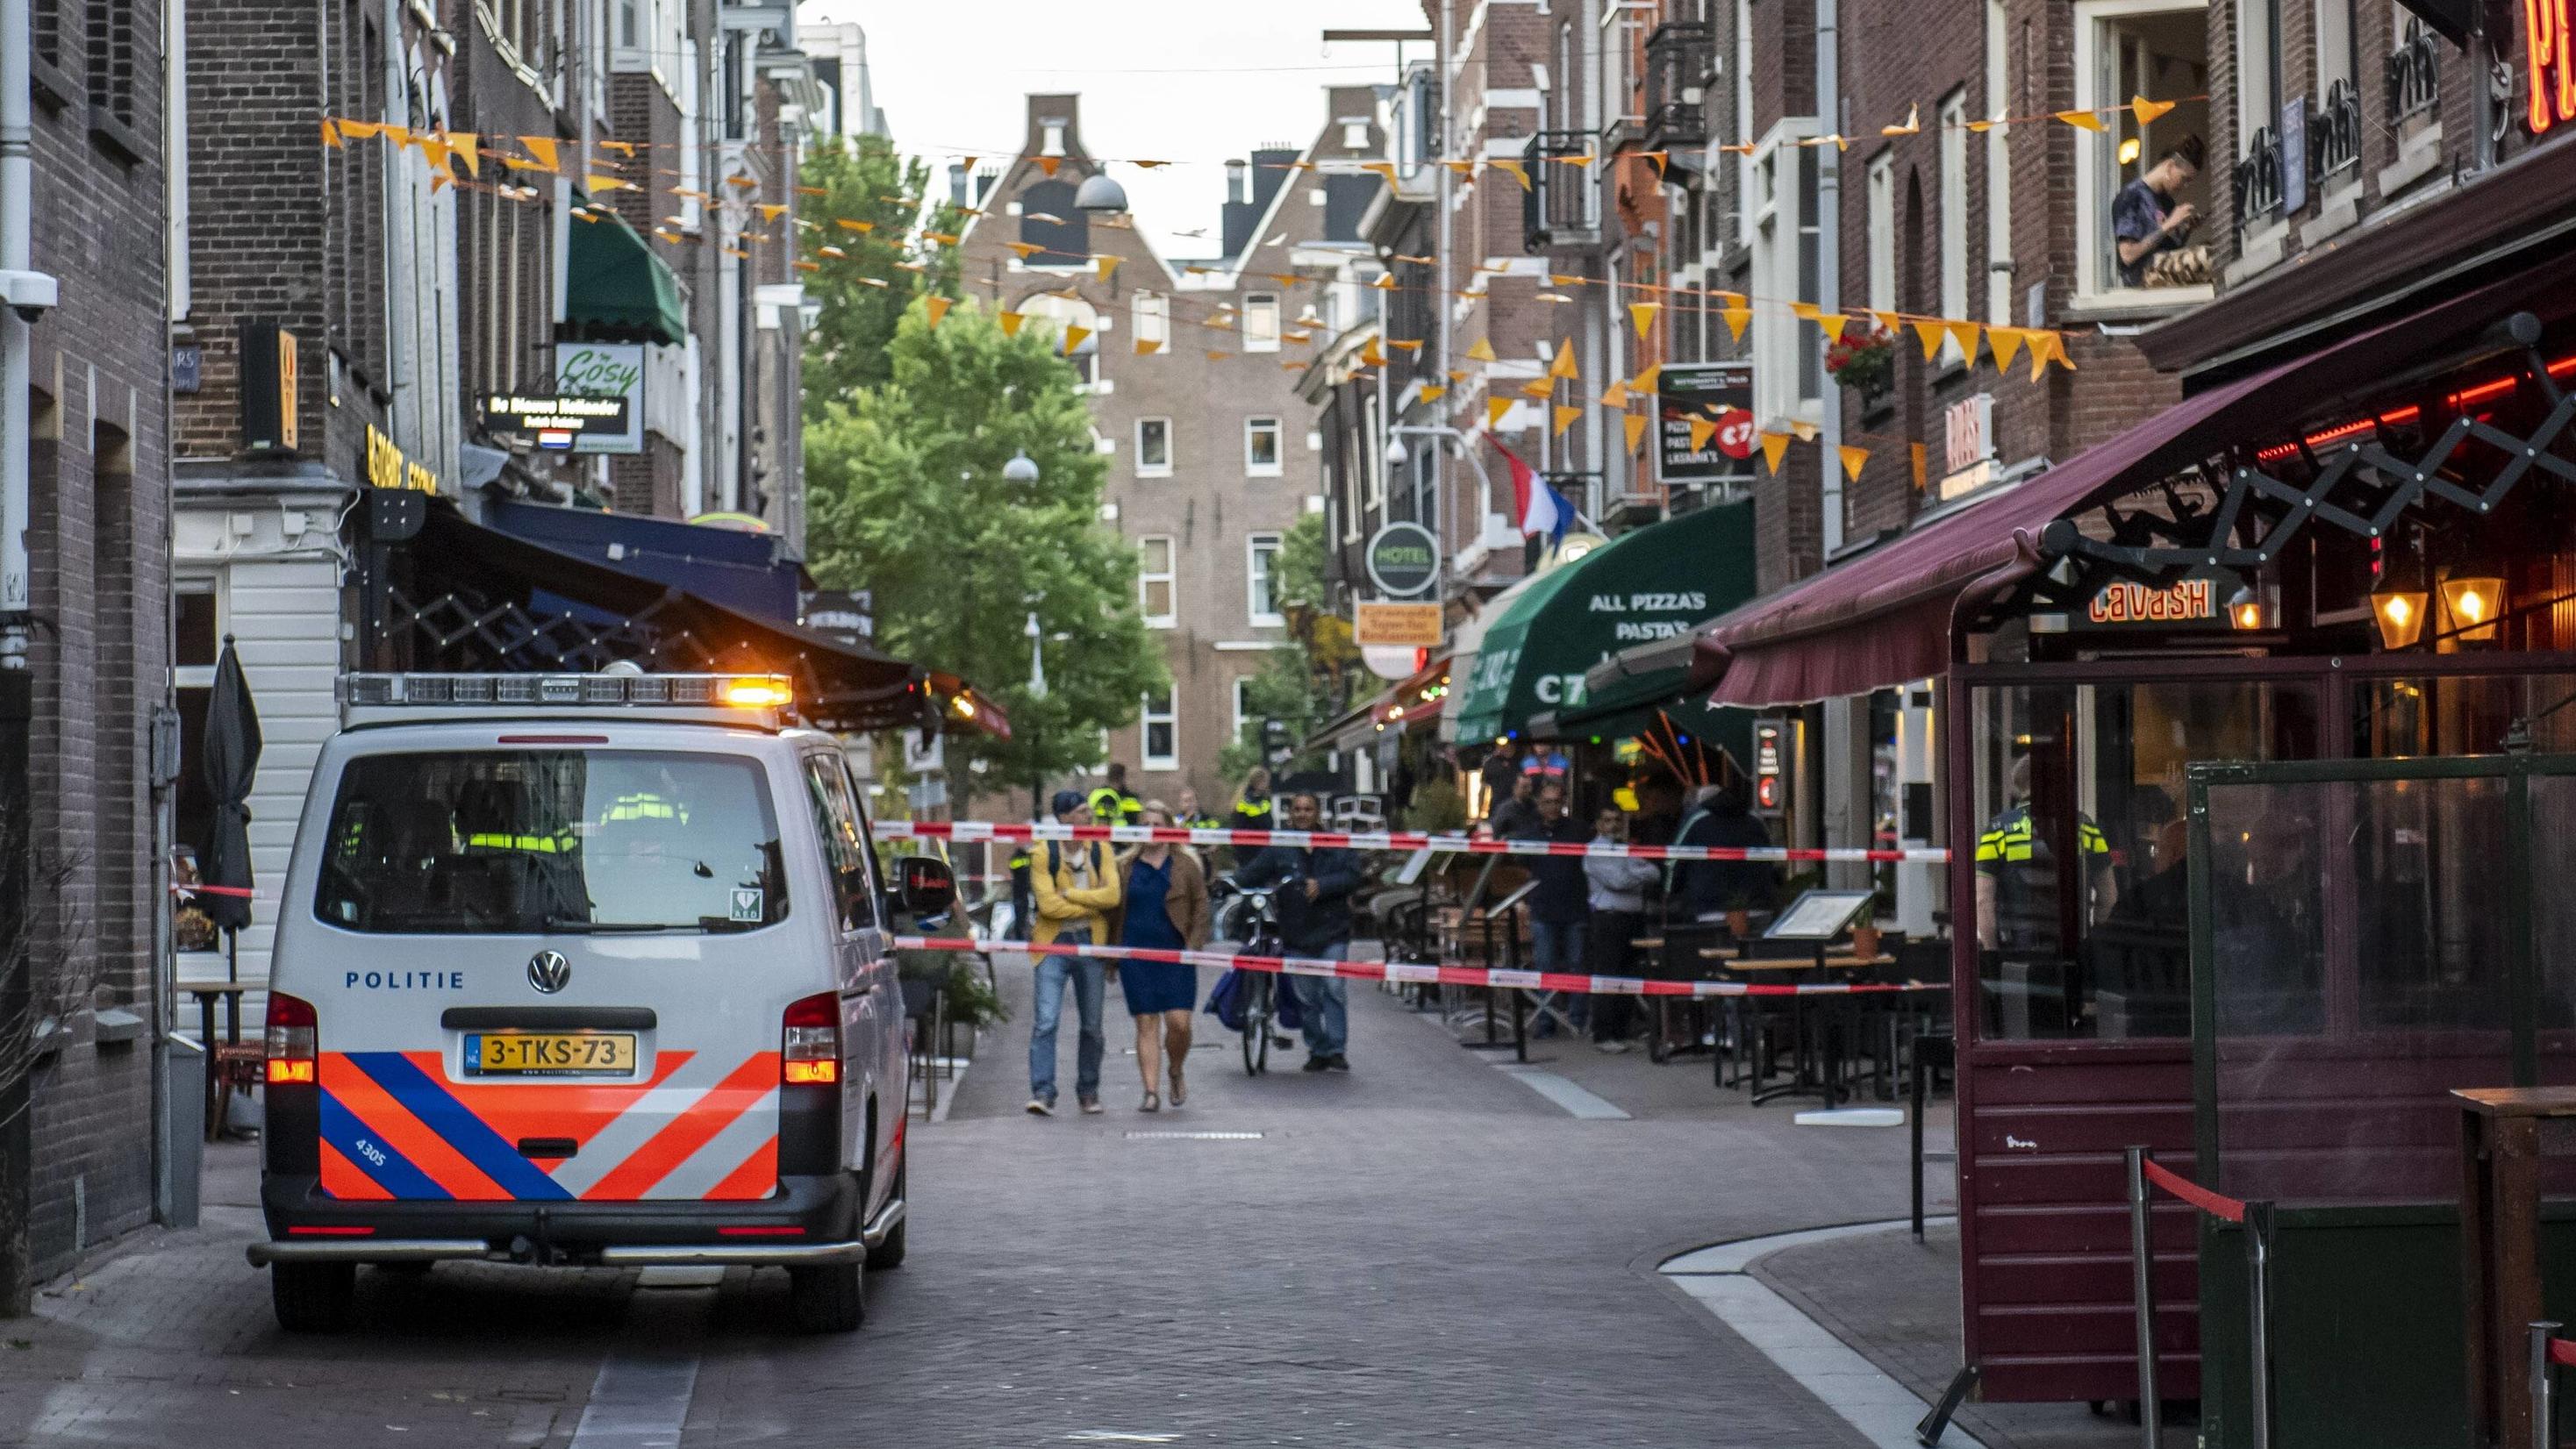 Peter de Vries wurde in Amsterdam niedergeschossen und schwebt in Lebensgefahr. 